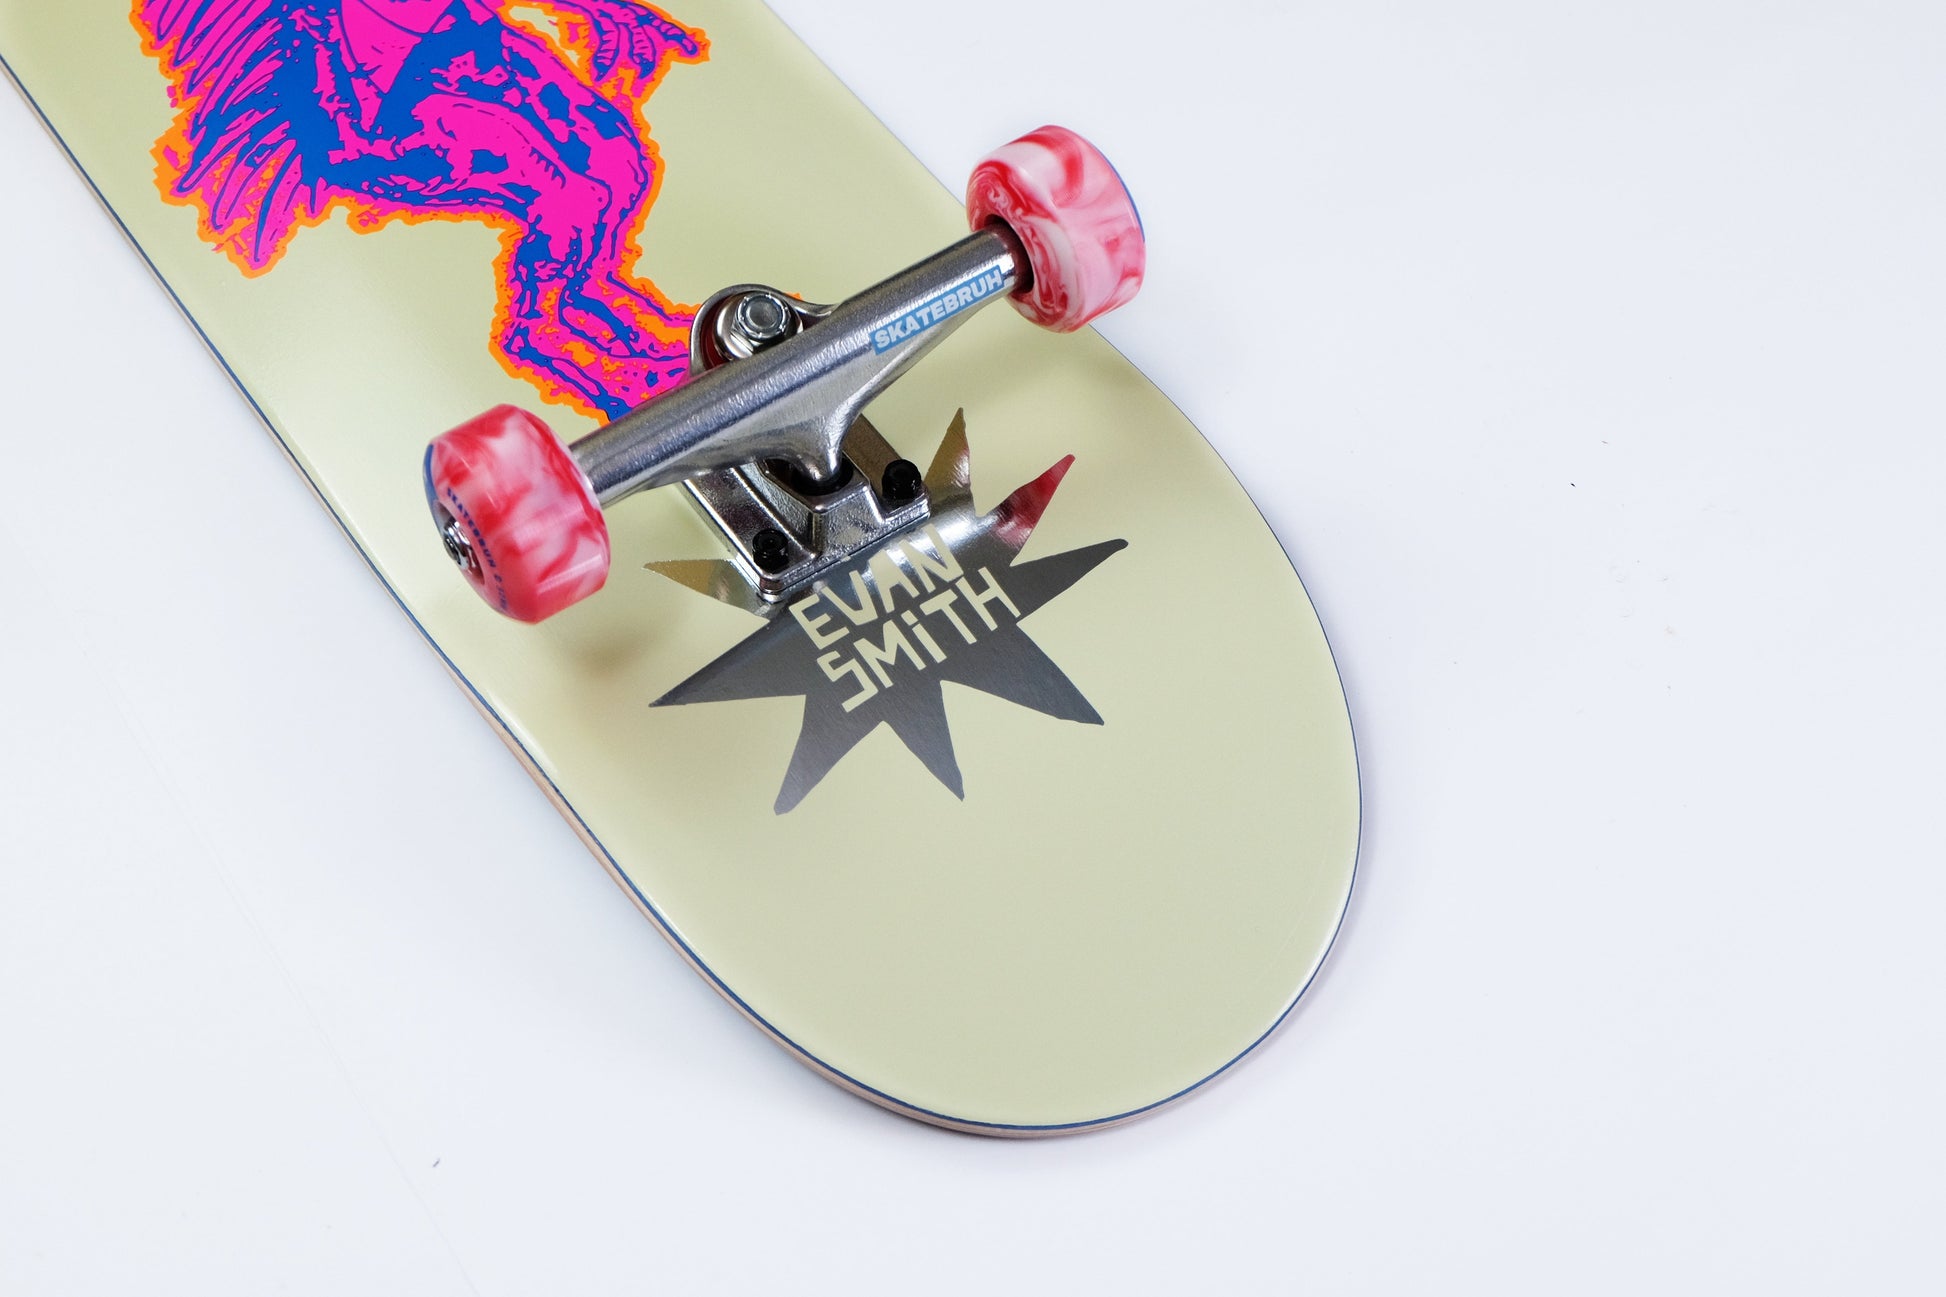 UMA 8.25" Evan Smith Chupacabara skateboard - SkatebruhSG